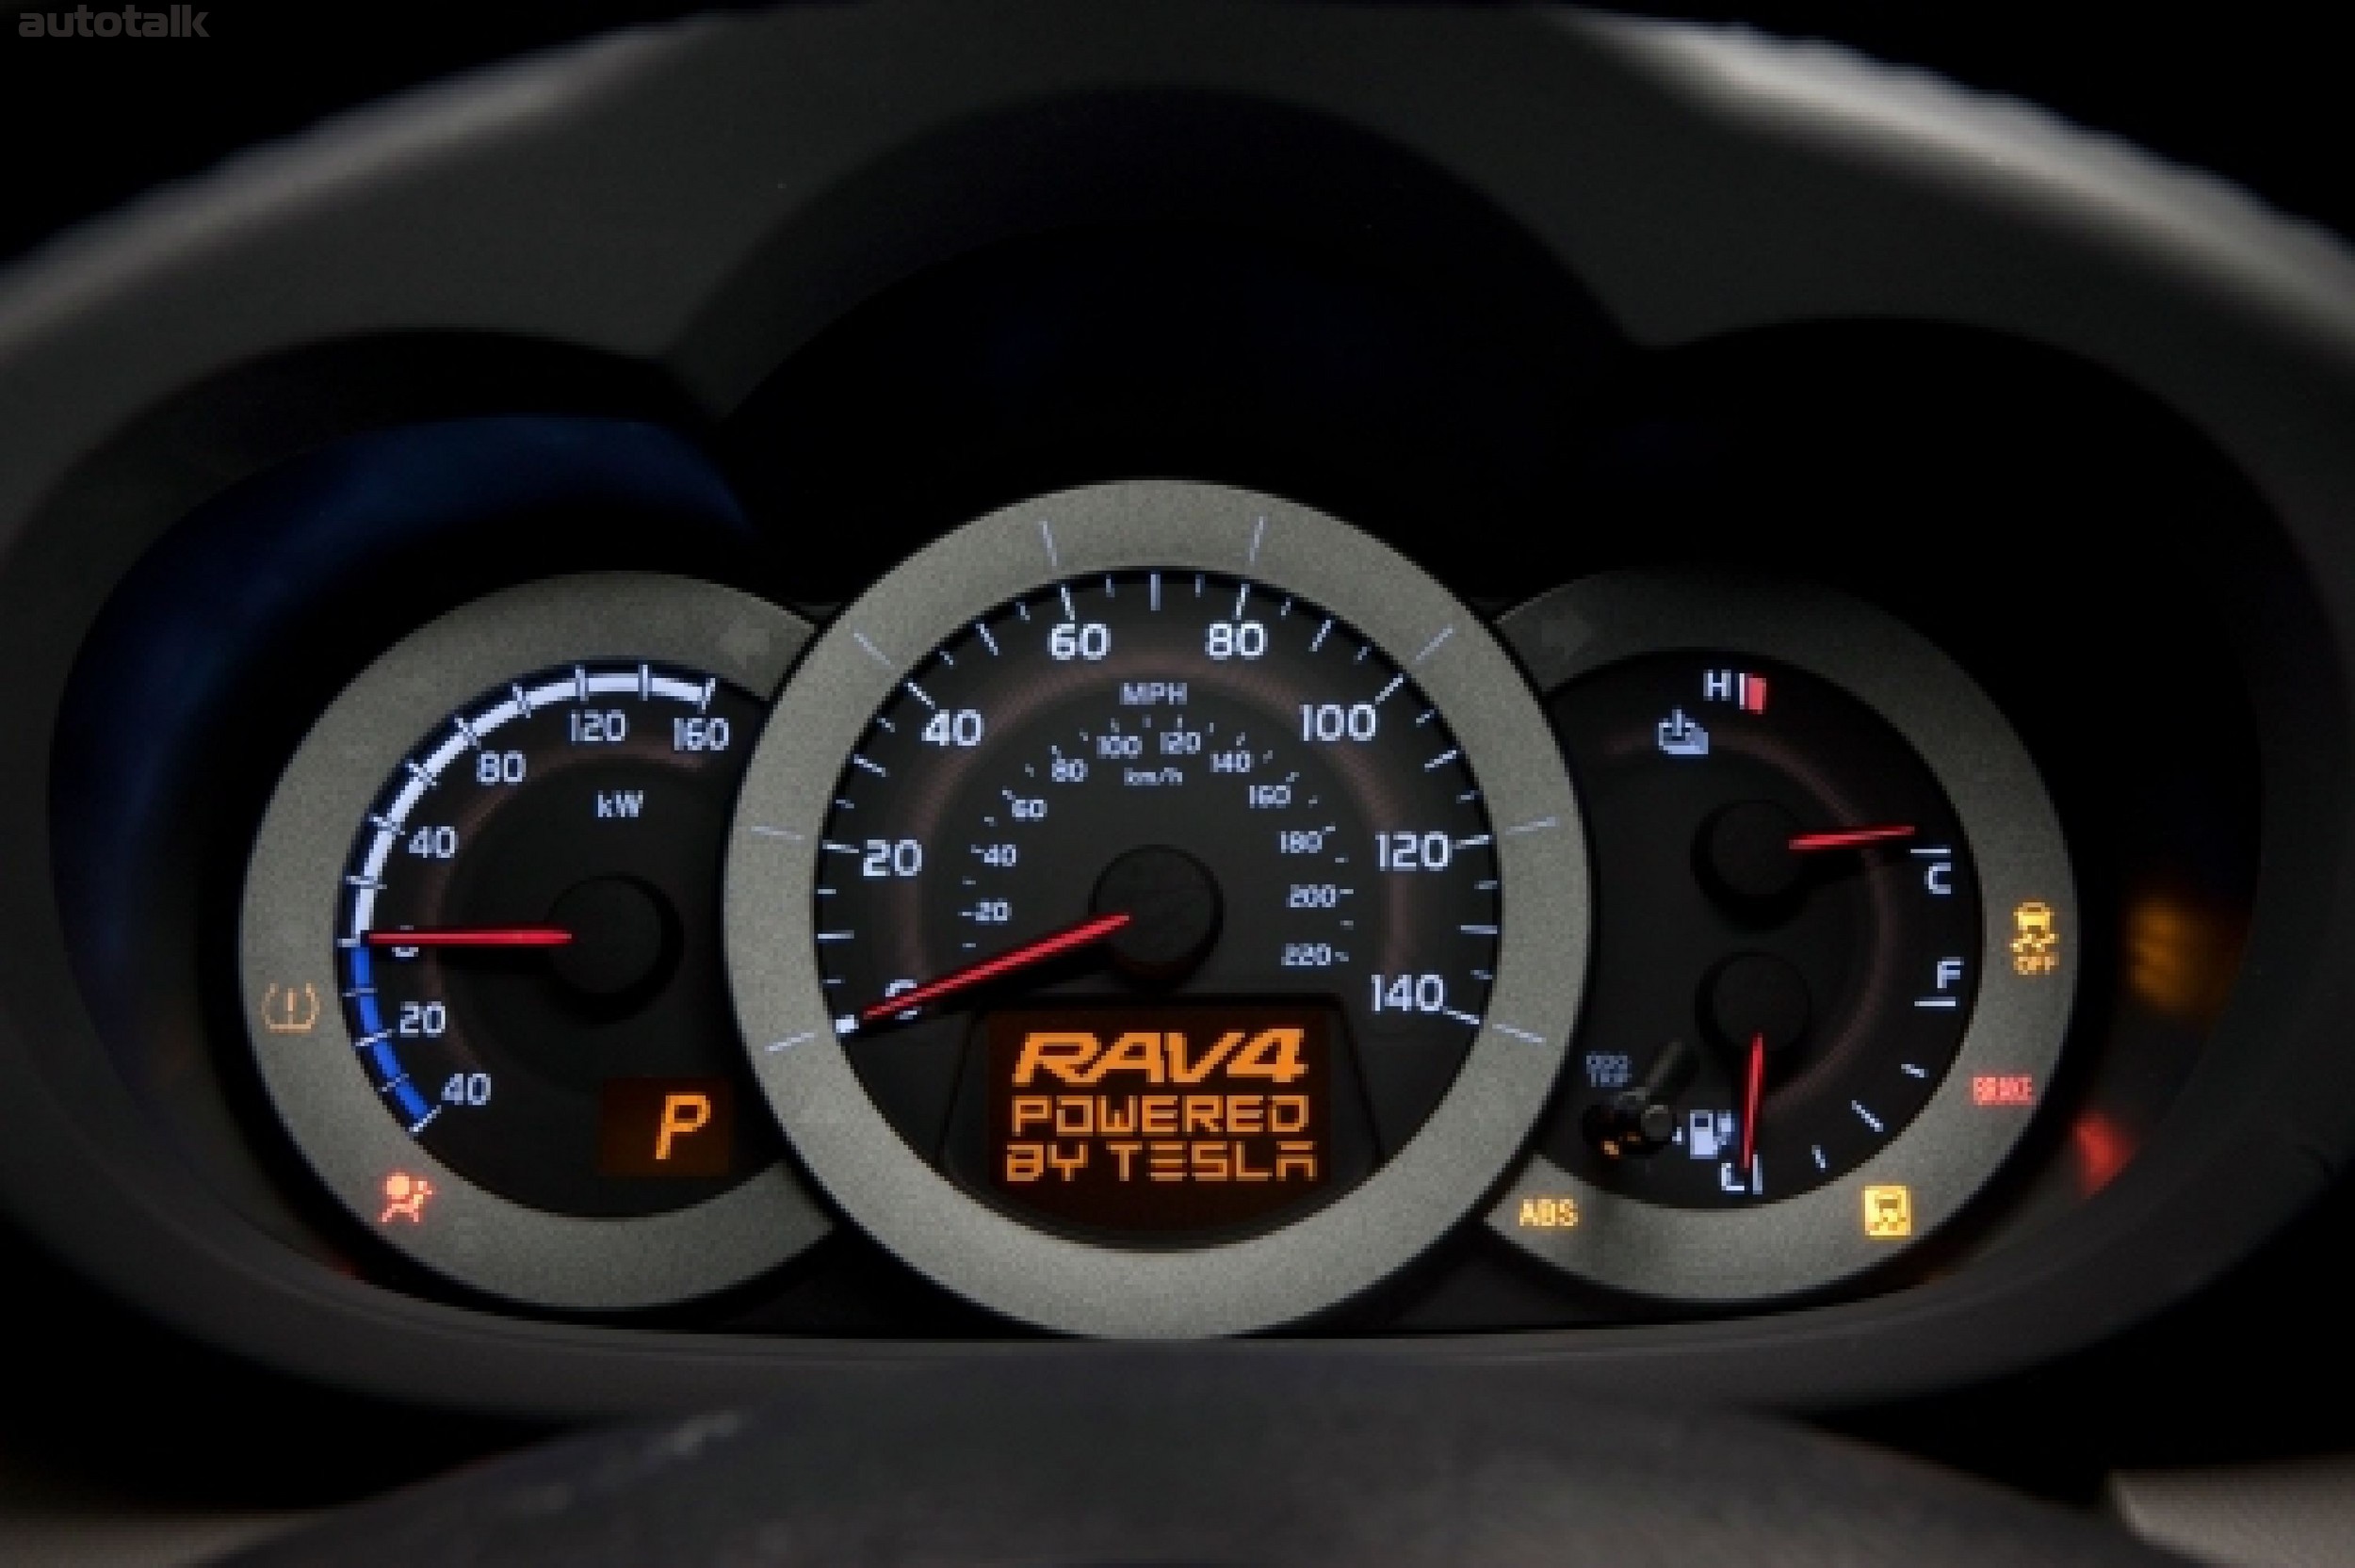 2012 Toyota RAV4 EV